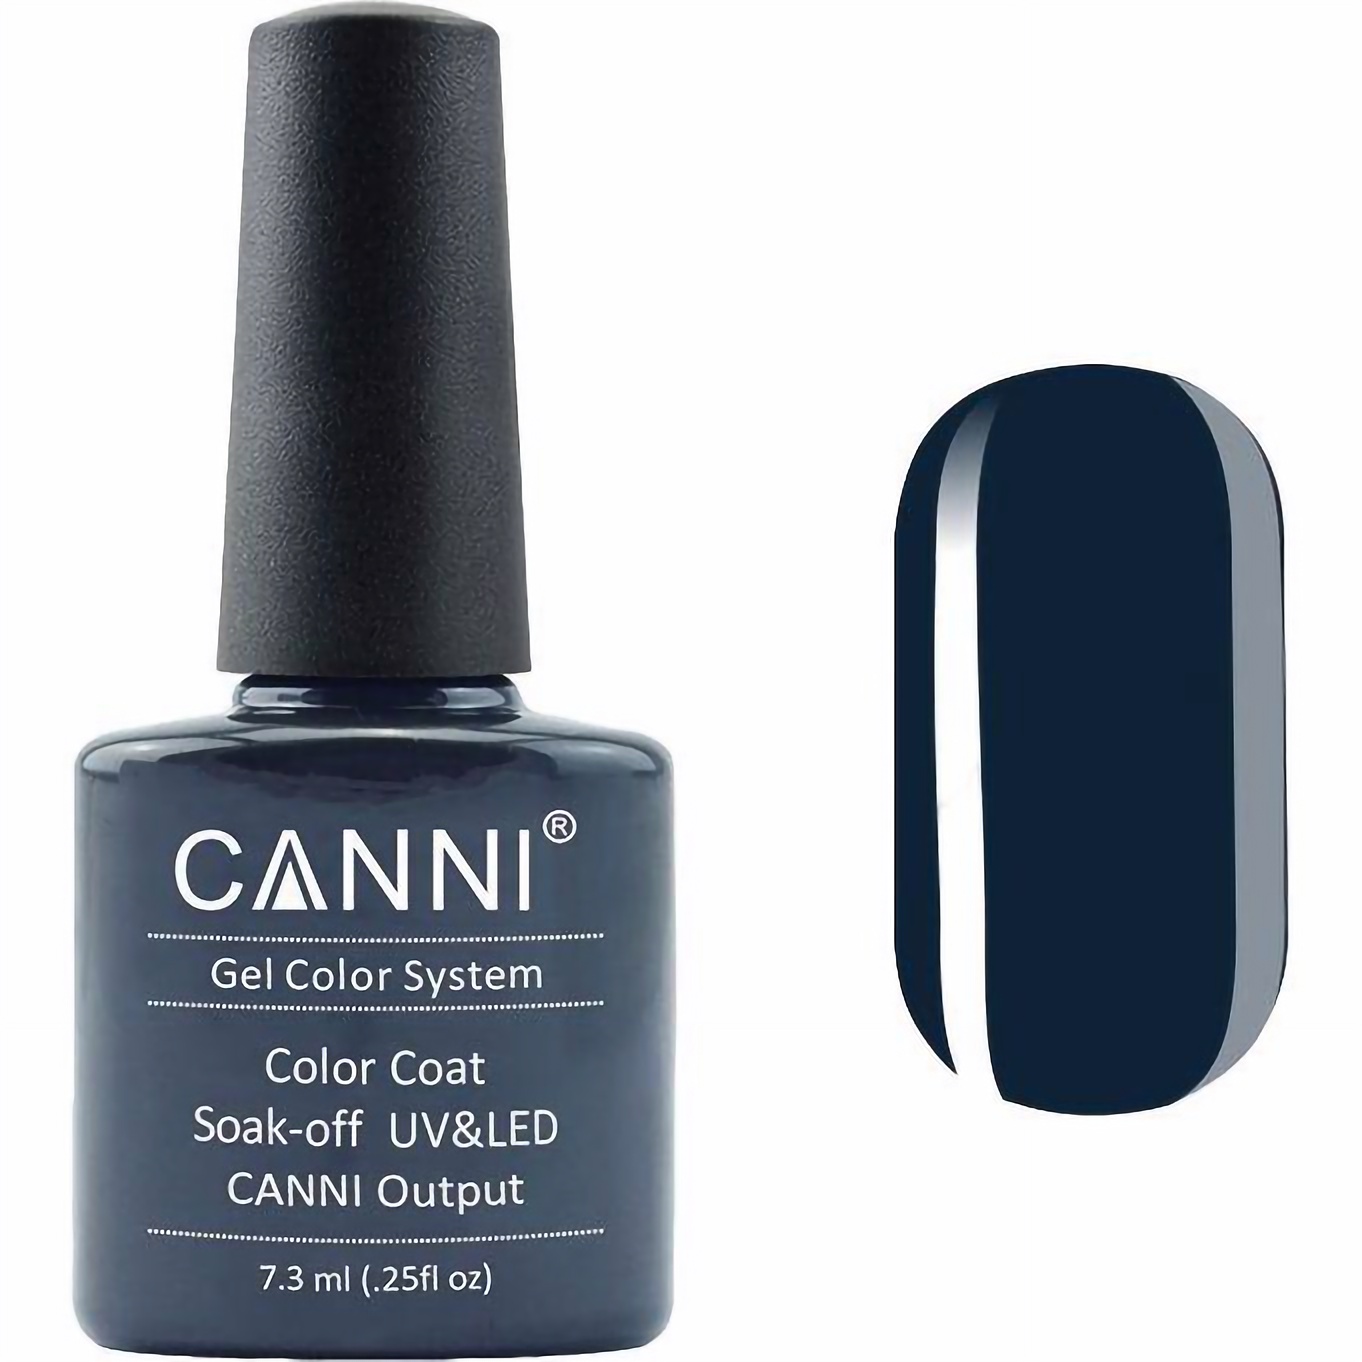 Гель-лак Canni Color Coat Soak-off UV&LED 180 темно-бирюзовый 7.3 мл - фото 1